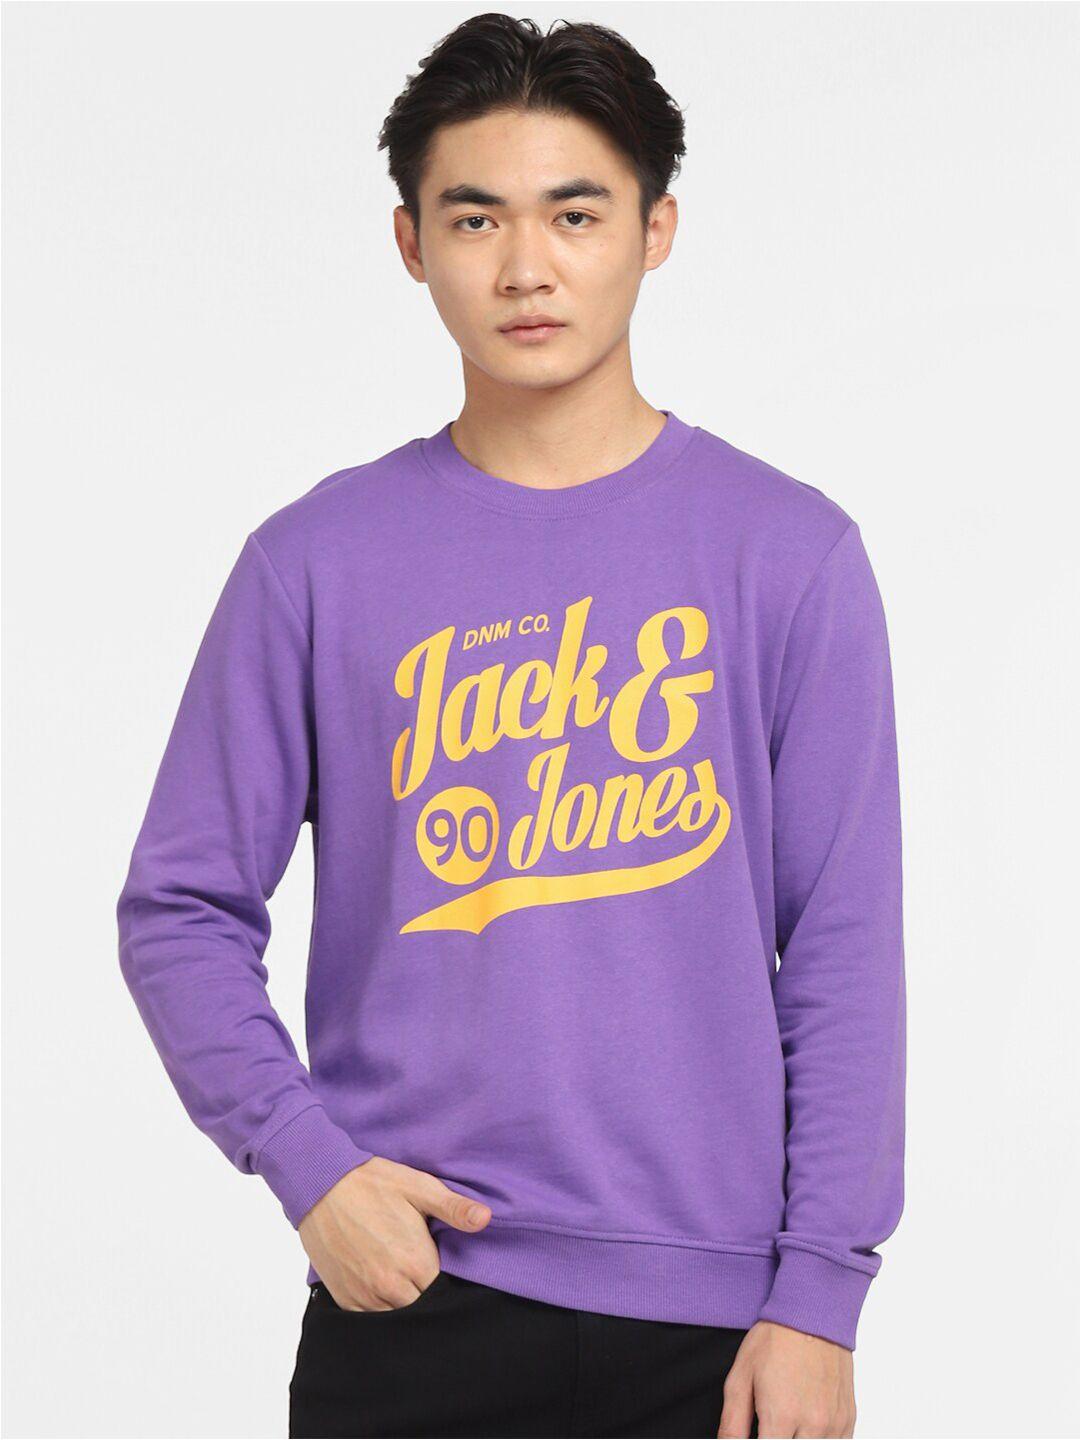 jack & jones men purple & yellow printed cotton sweatshirt